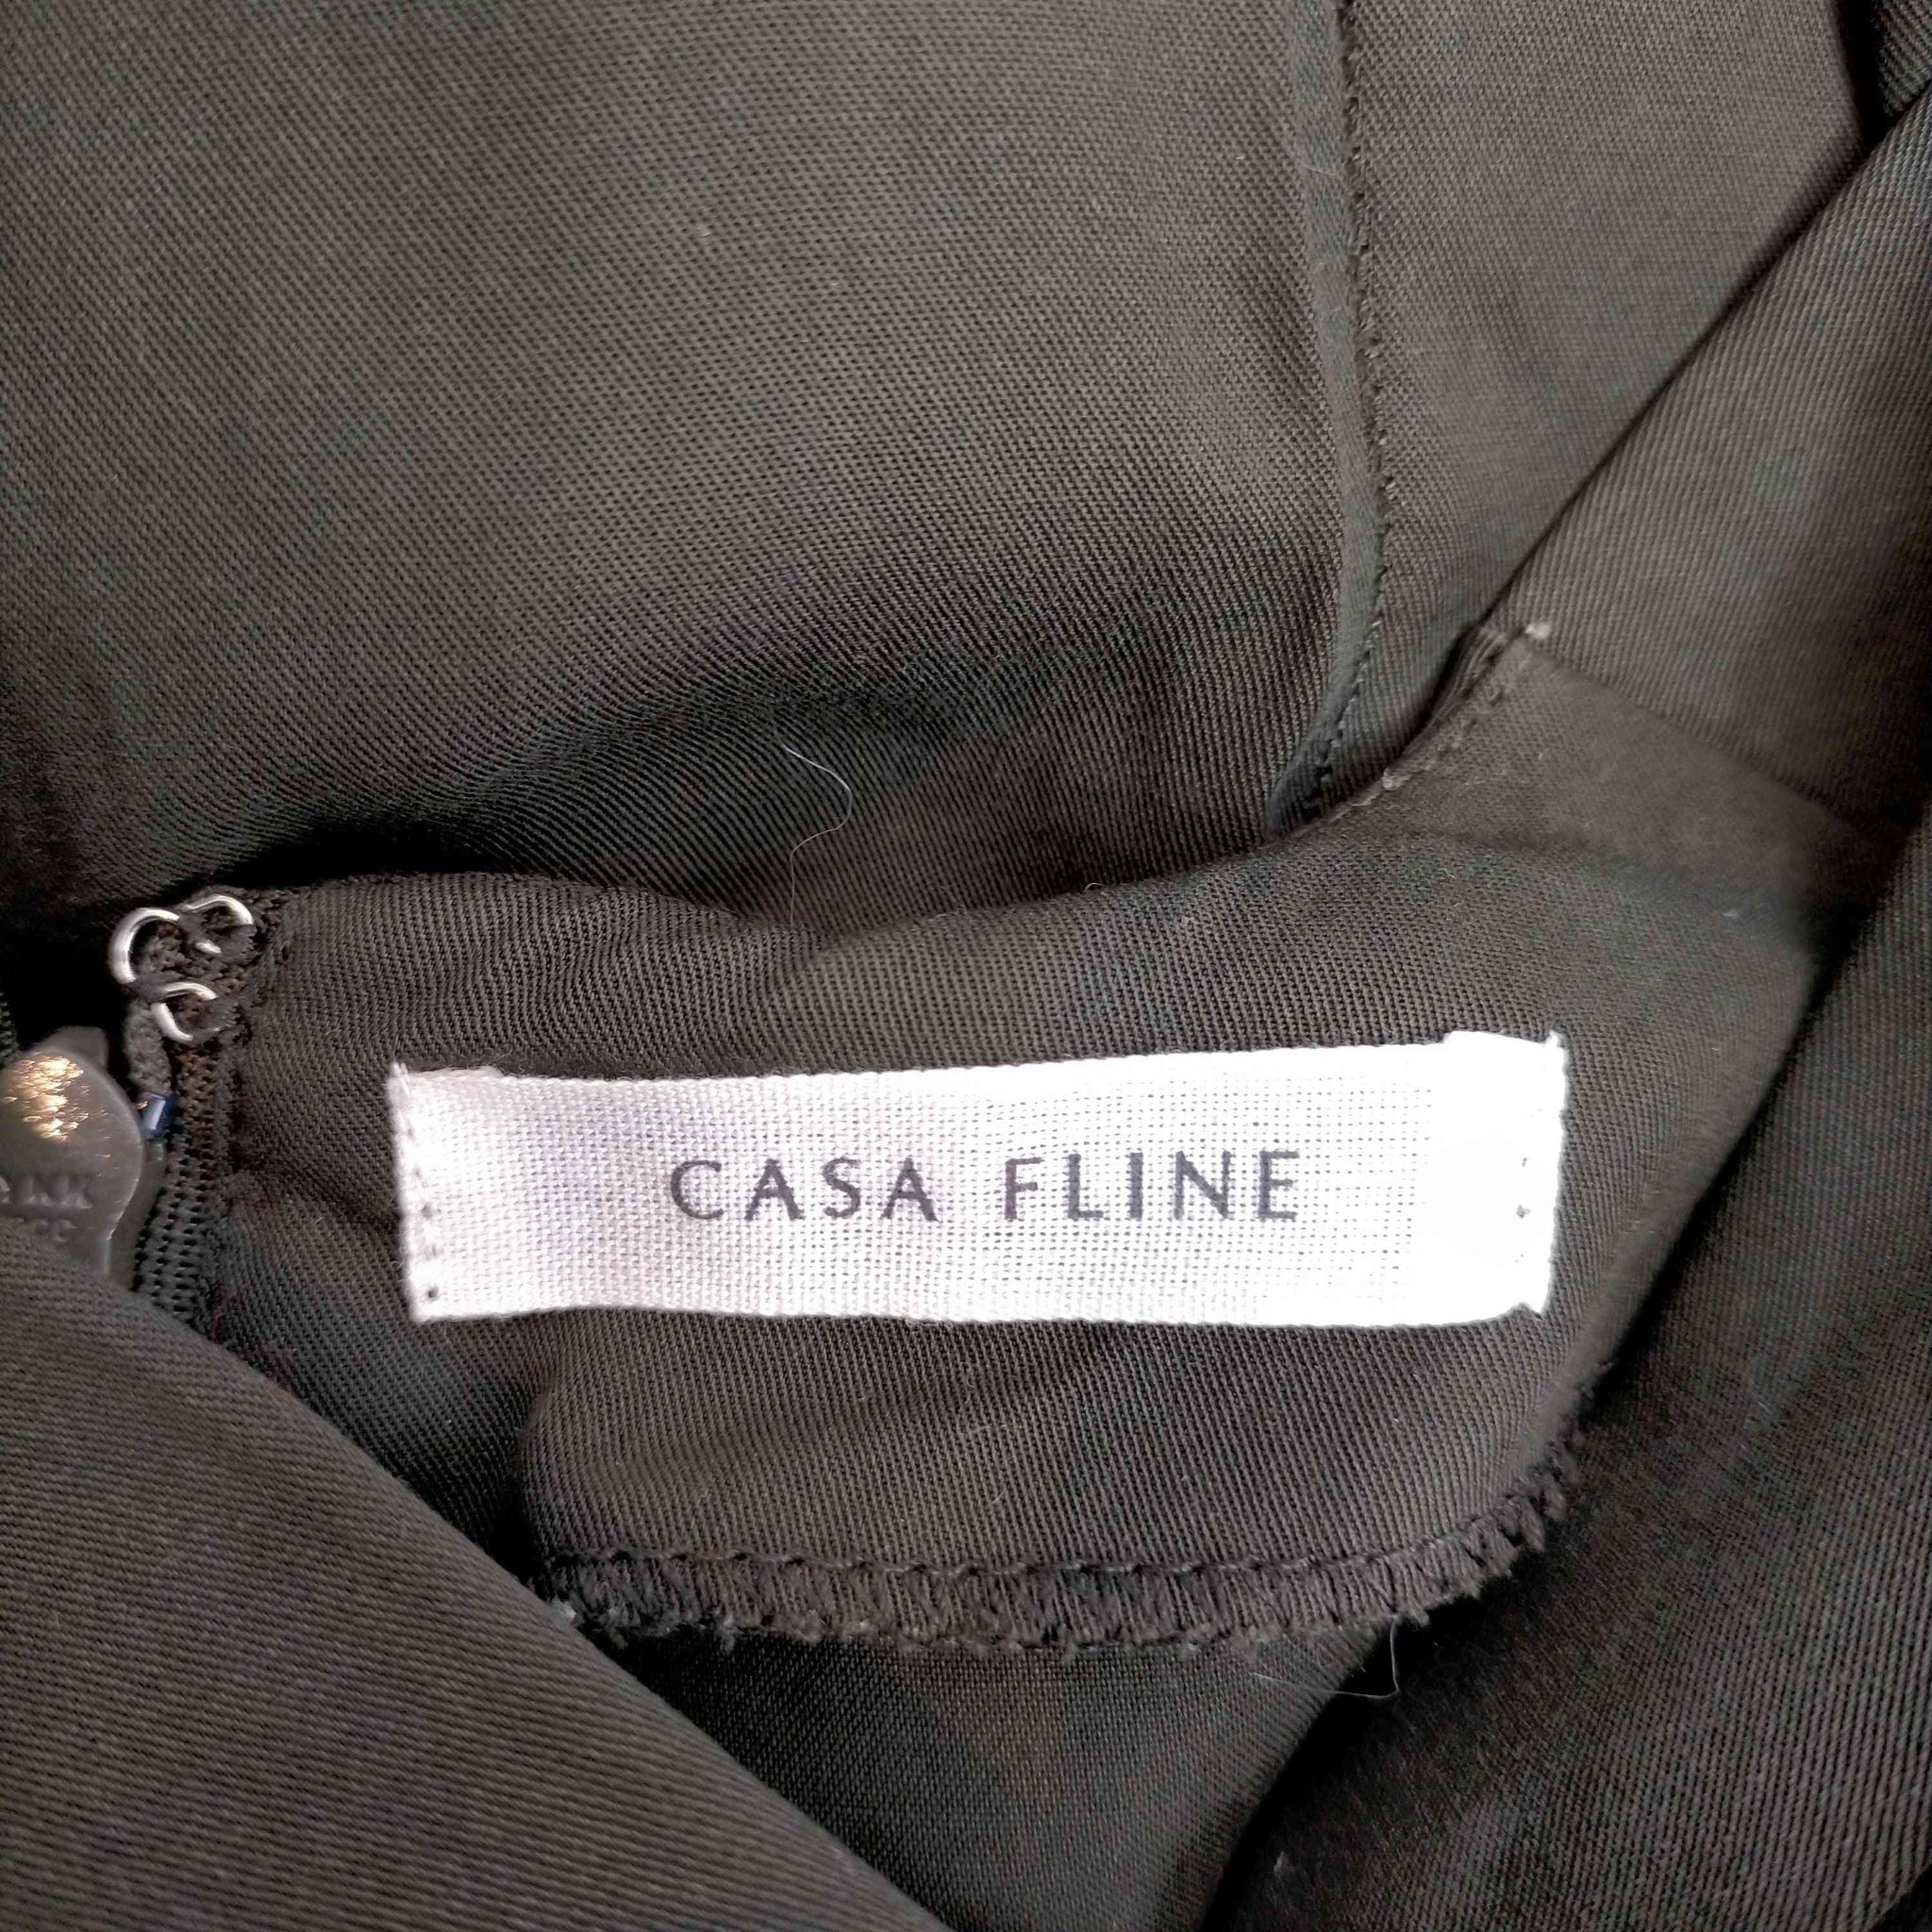 CASA FLINE(カーサフライン)タックギャザーフレアドレス